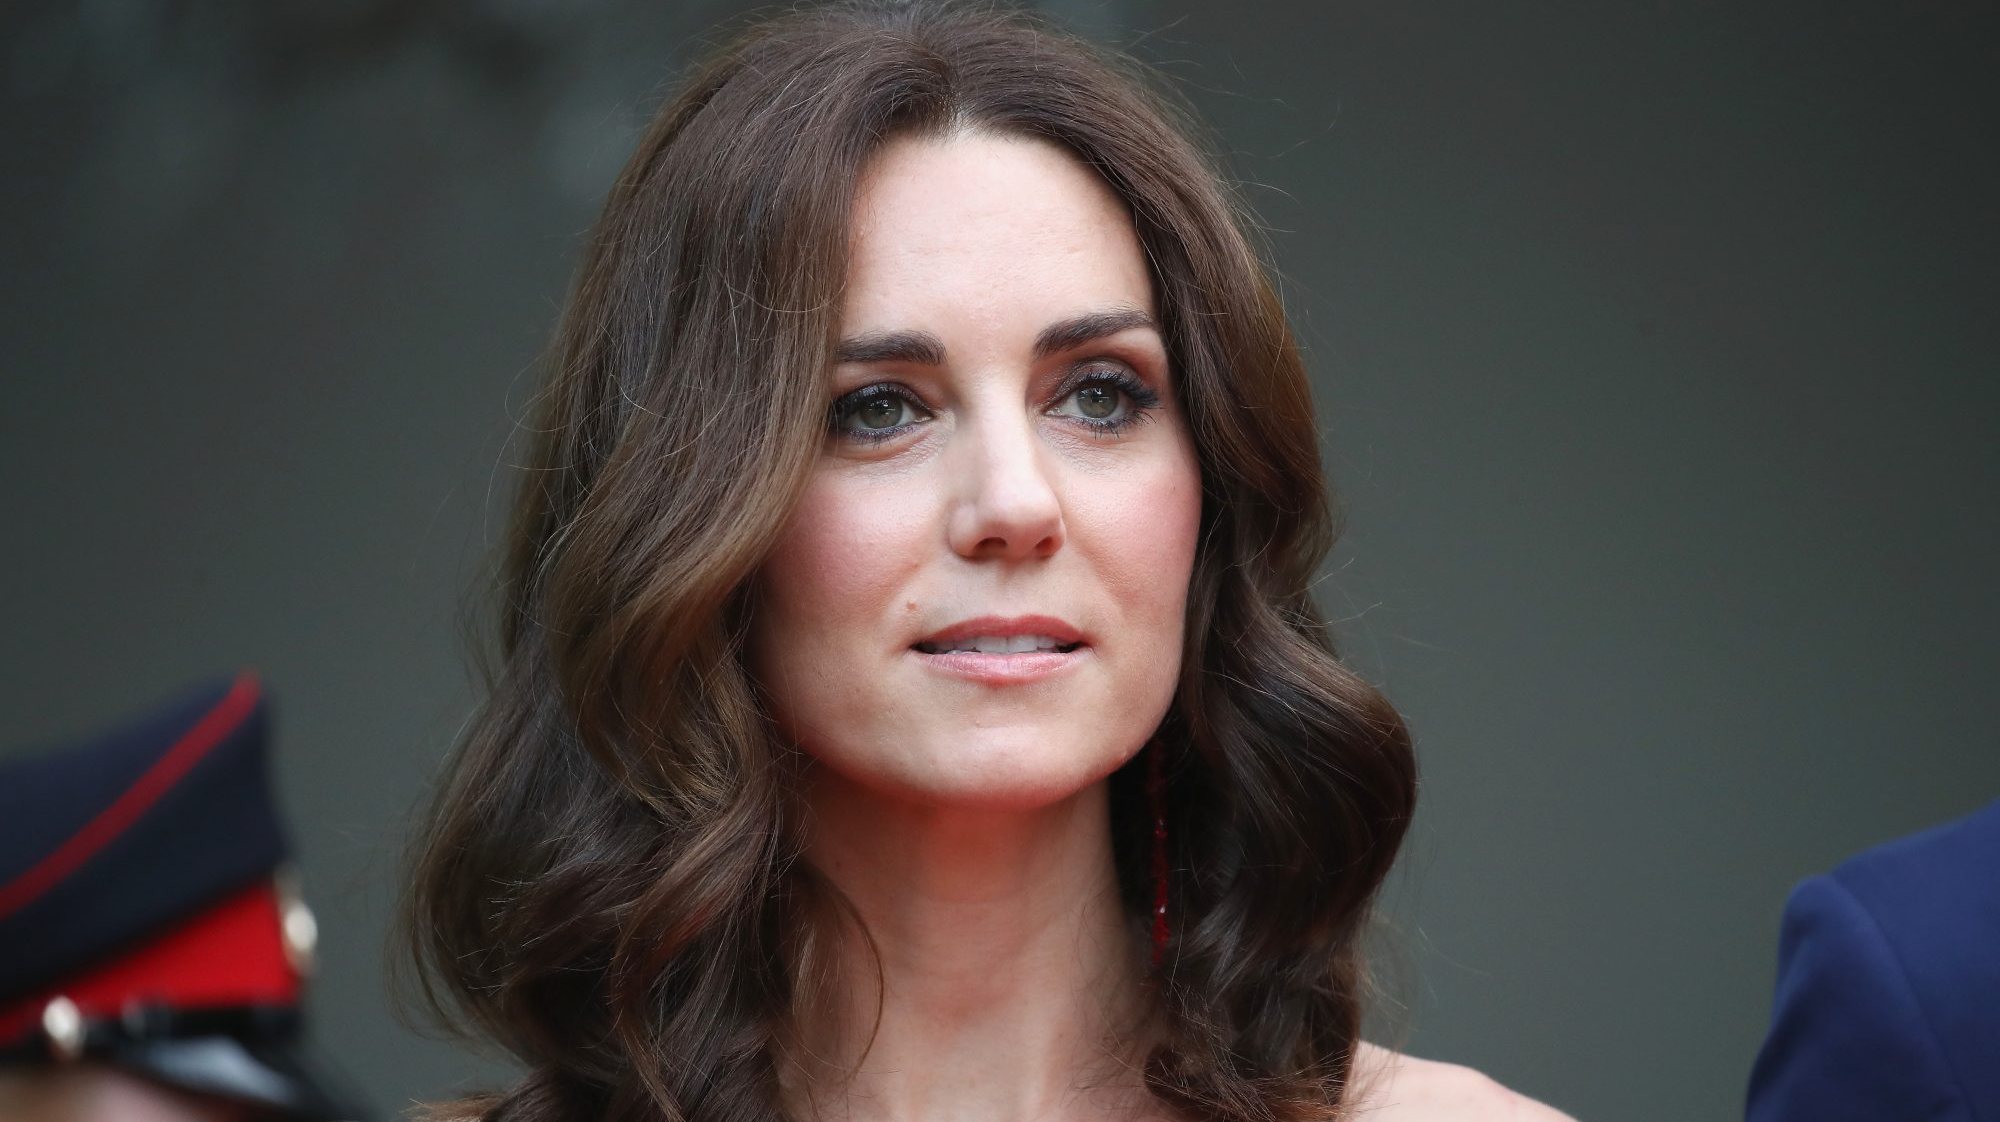 Kate Middleton : son cliché pour la fête des mères critiqué… Elle sort du silence et s’excuse